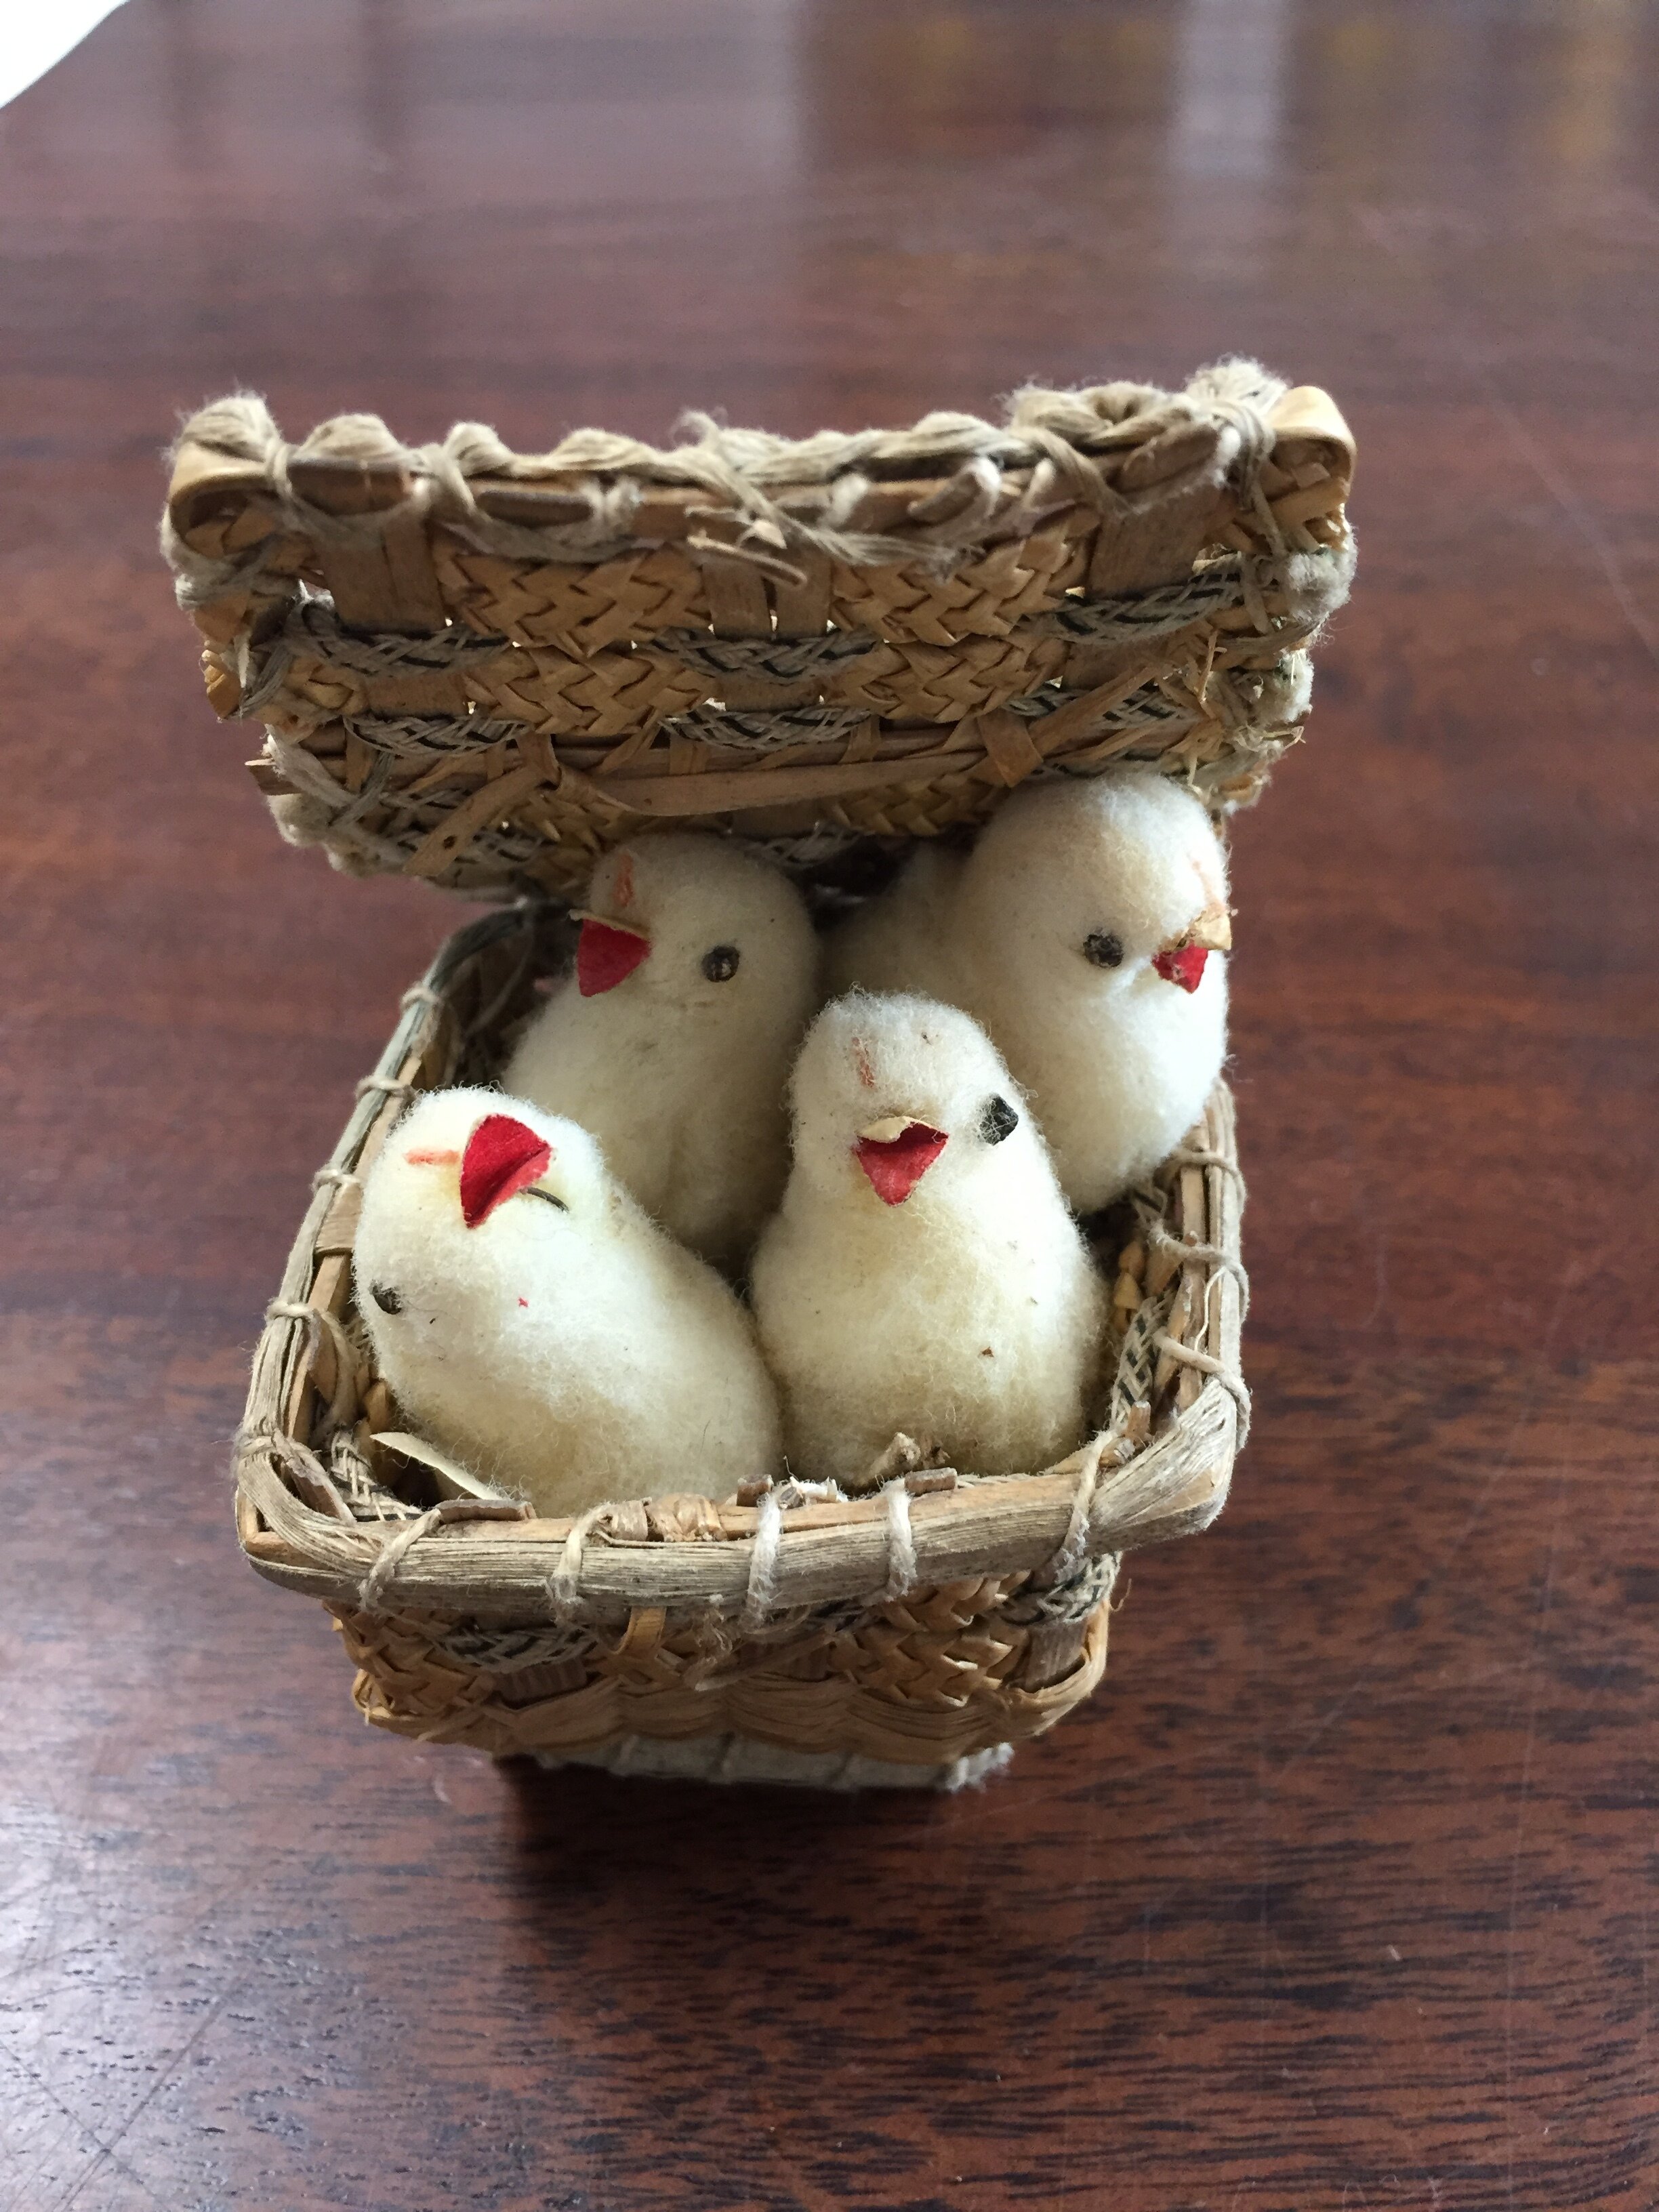 Artifact No.: 1981.113.1 - basket of chicks!